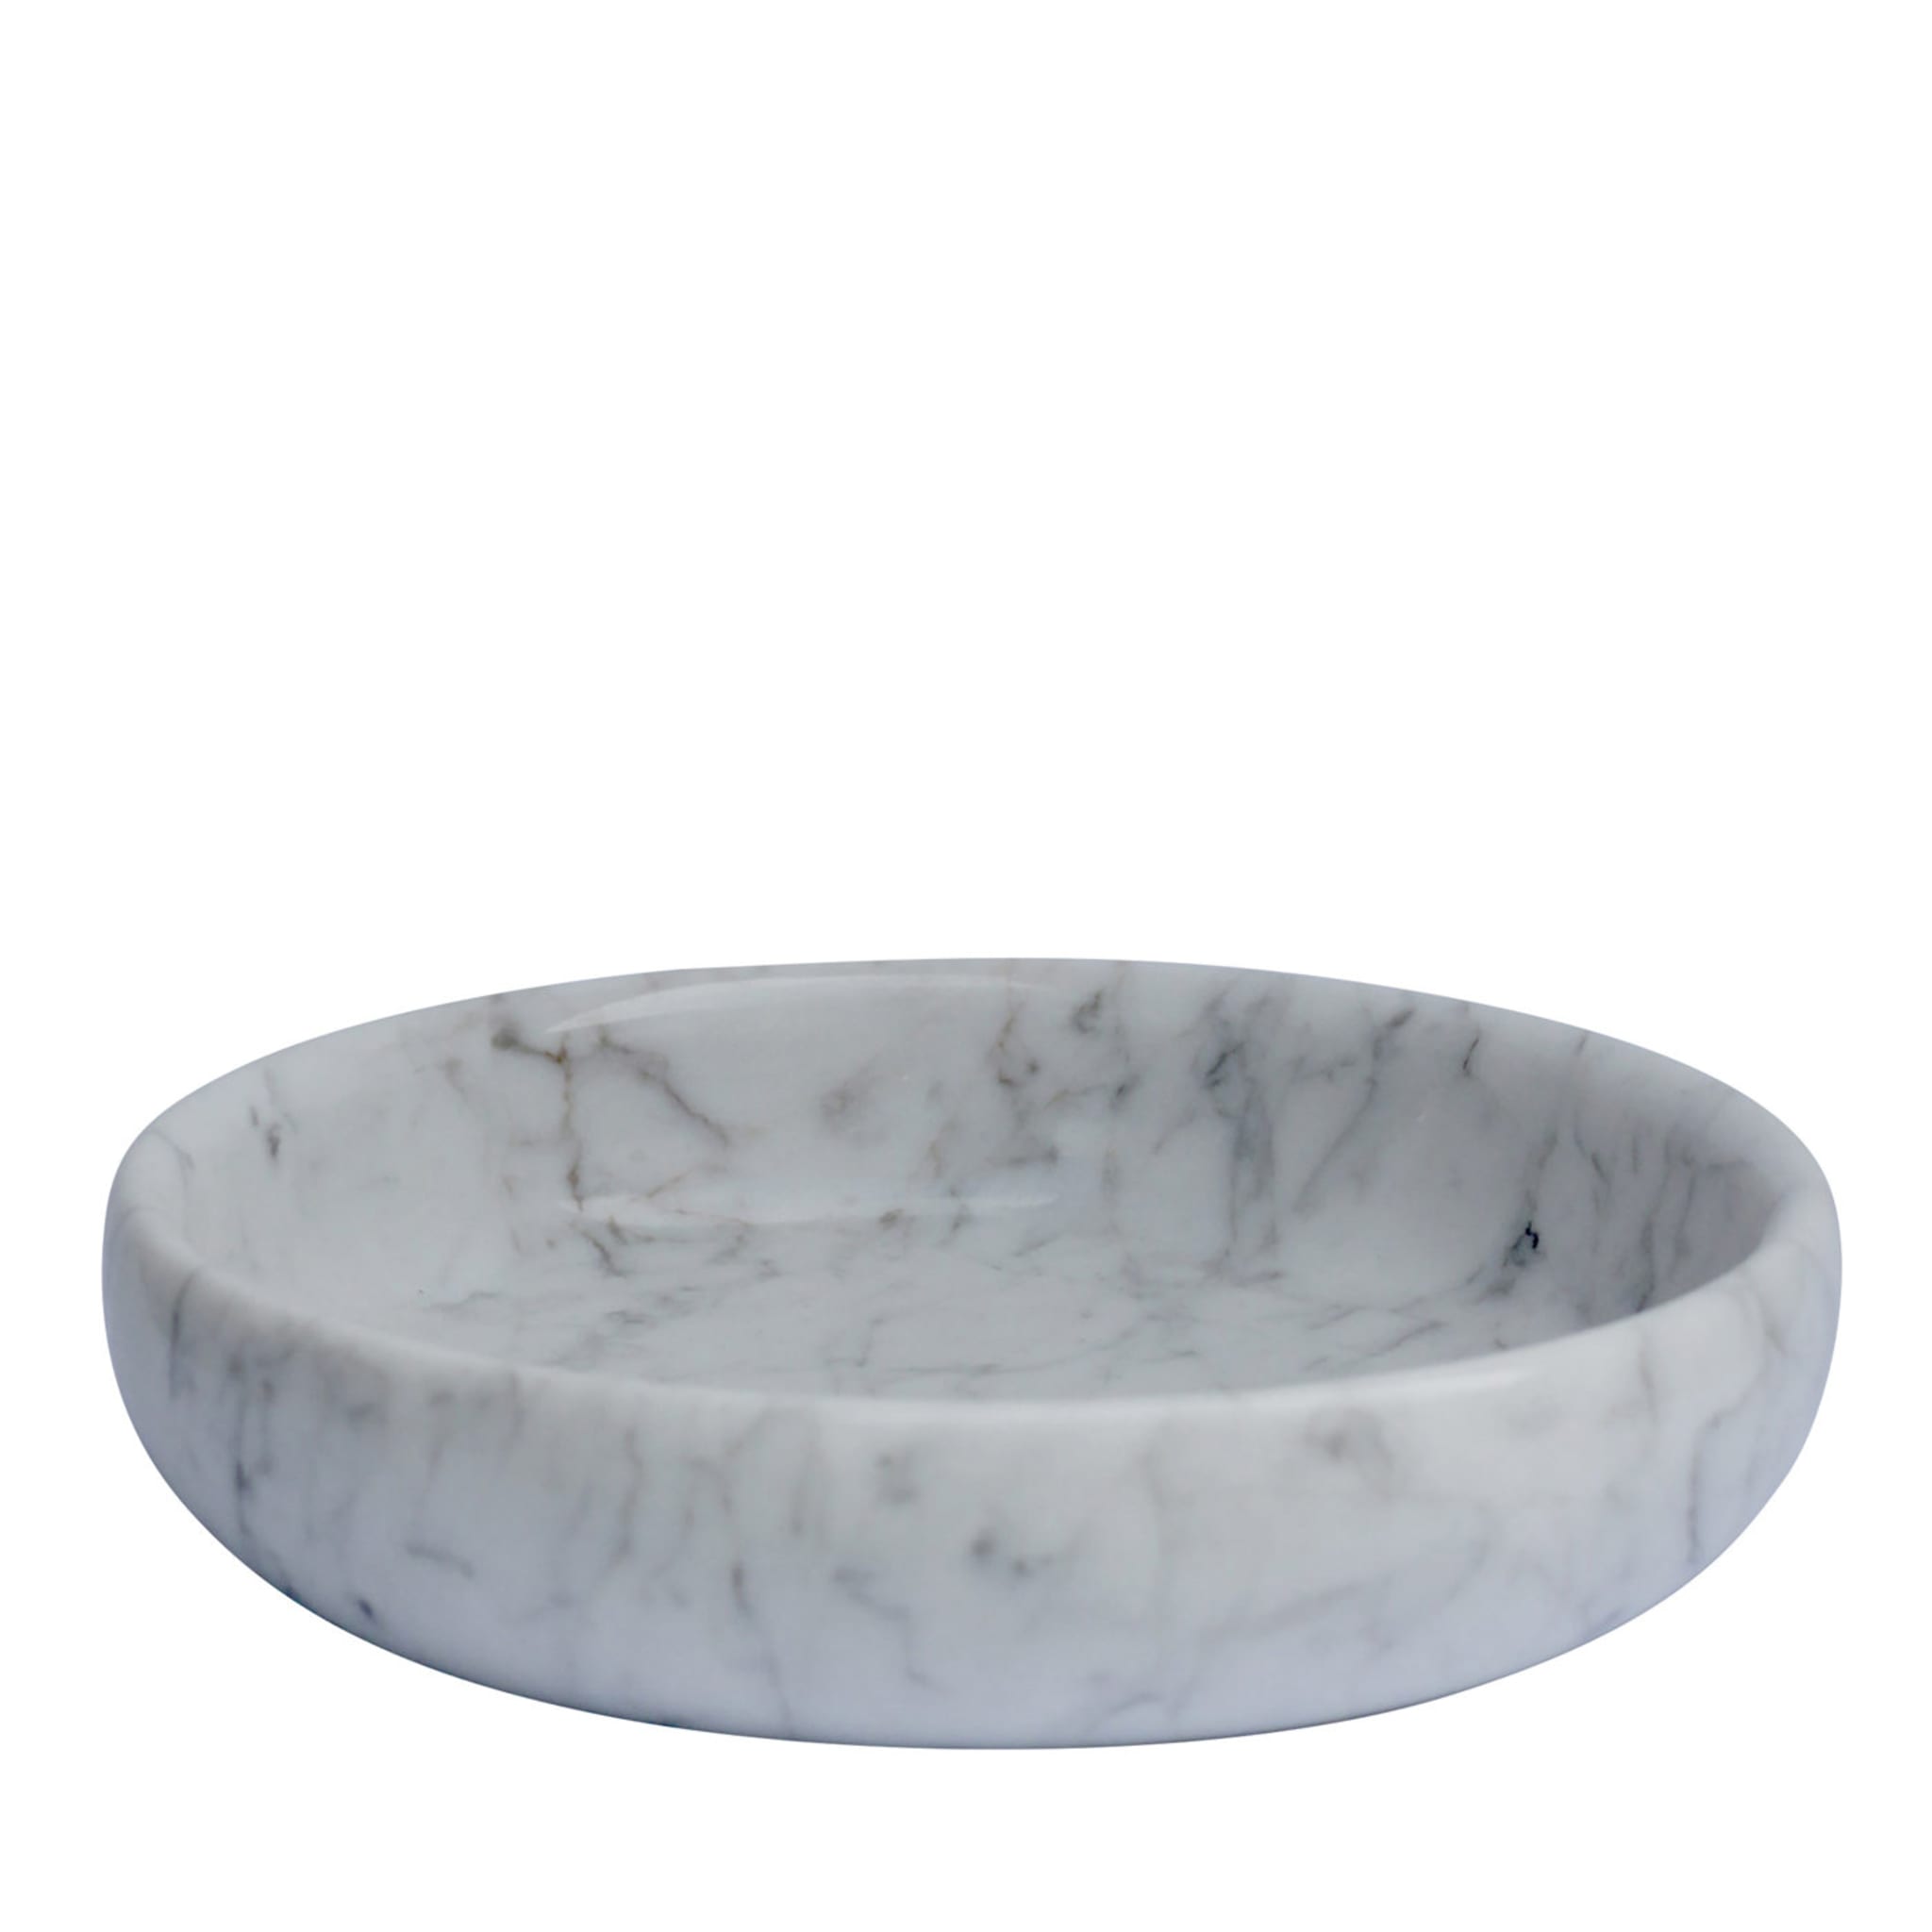 Vide Pochette in marmo bianco di Carrara - Vista principale